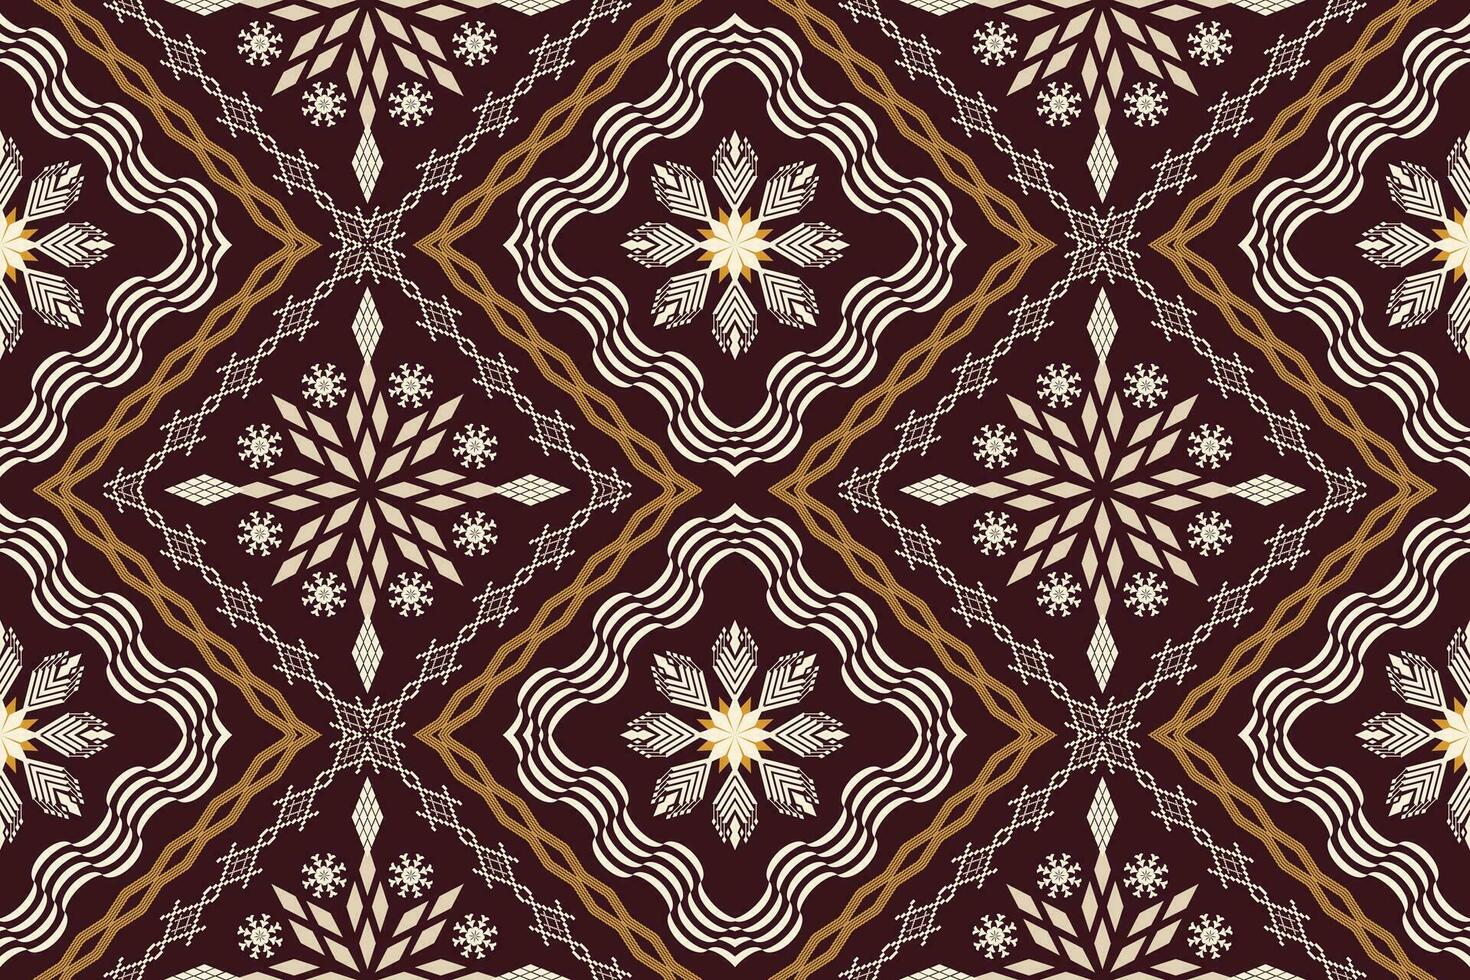 geométrico étnico asteca bordado estilo.figura ikat oriental tradicional arte padrão.design para étnico plano de fundo,papel de parede,moda,vestuário,embrulho,tecido,elemento,sarong,gráfico ilustração. vetor